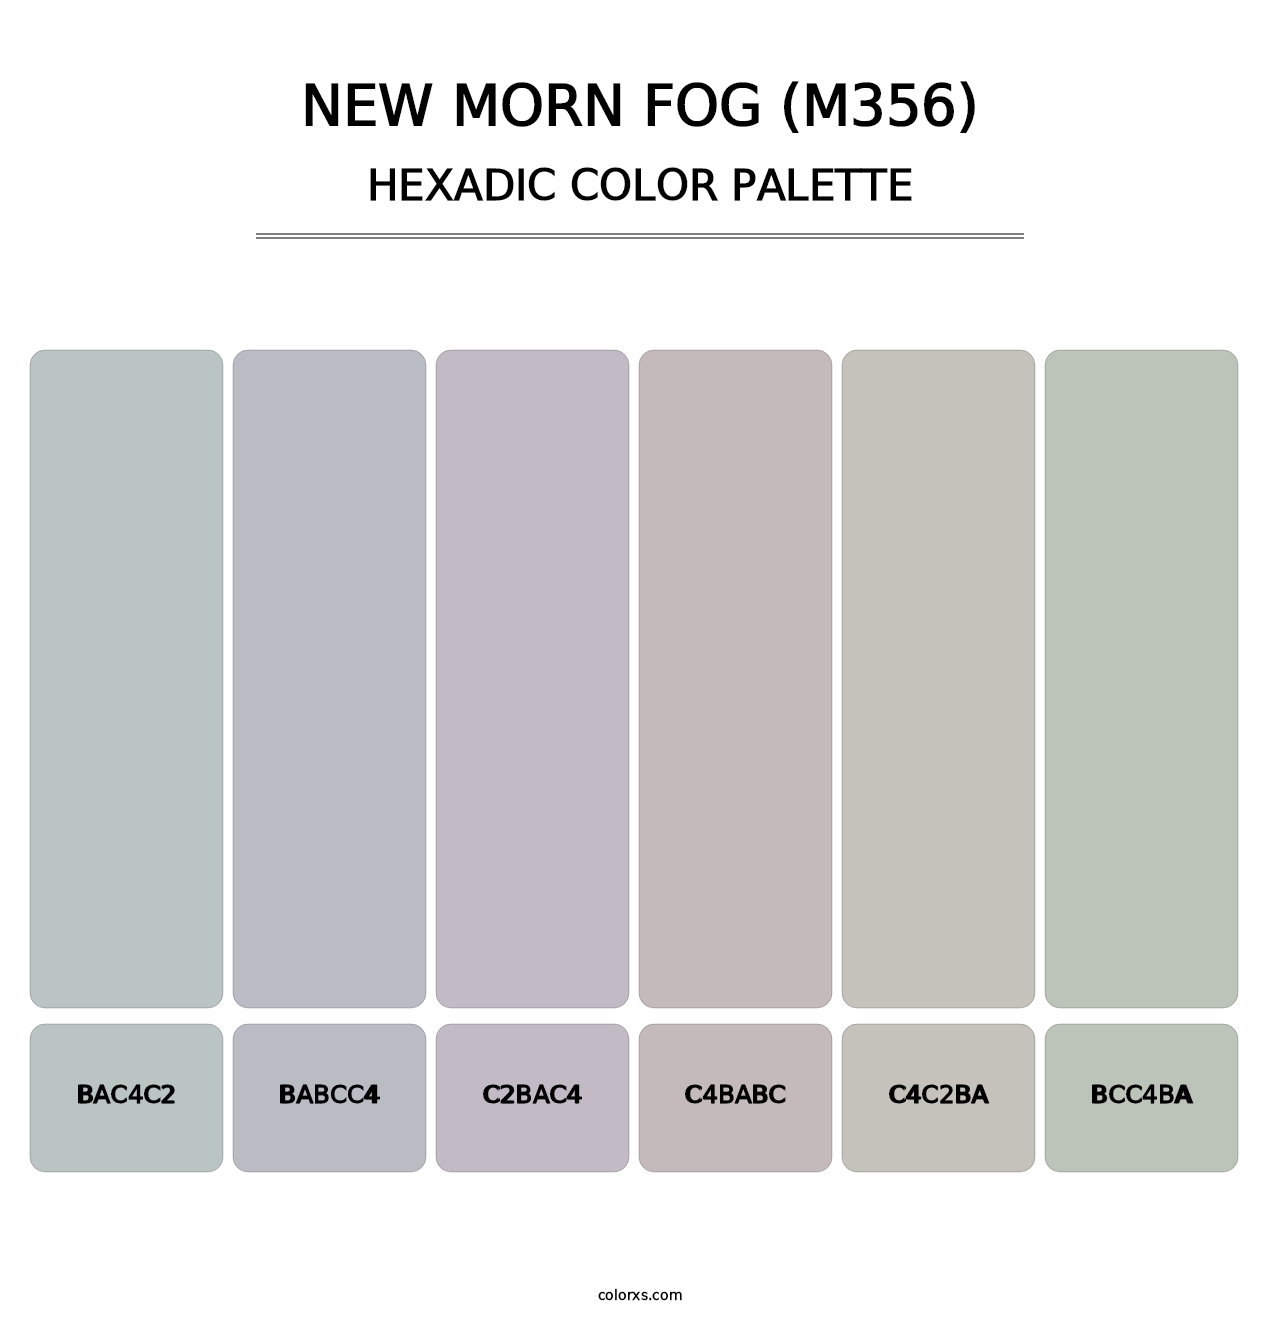 New Morn Fog (M356) - Hexadic Color Palette